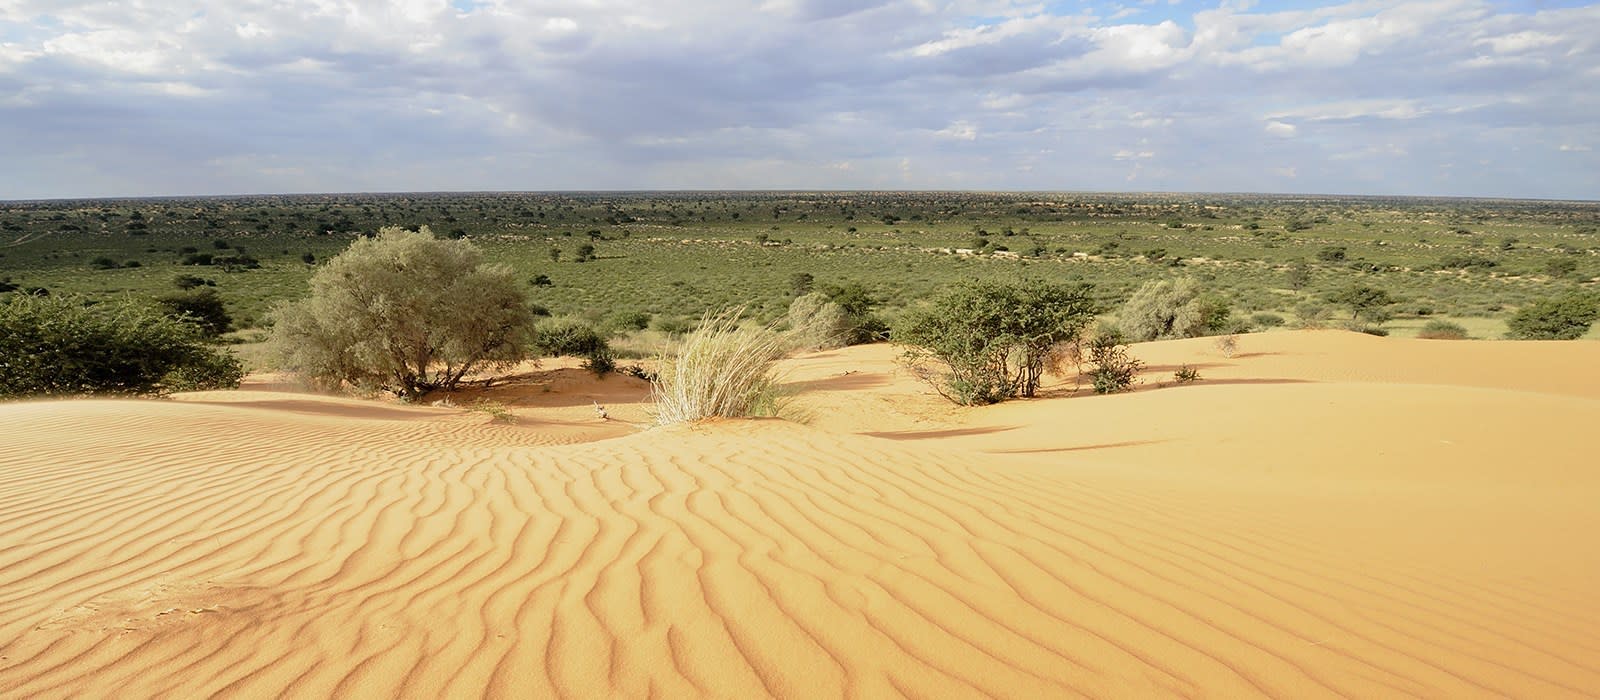 Kalahari Desert Tours In South Africa Enchanting Travels